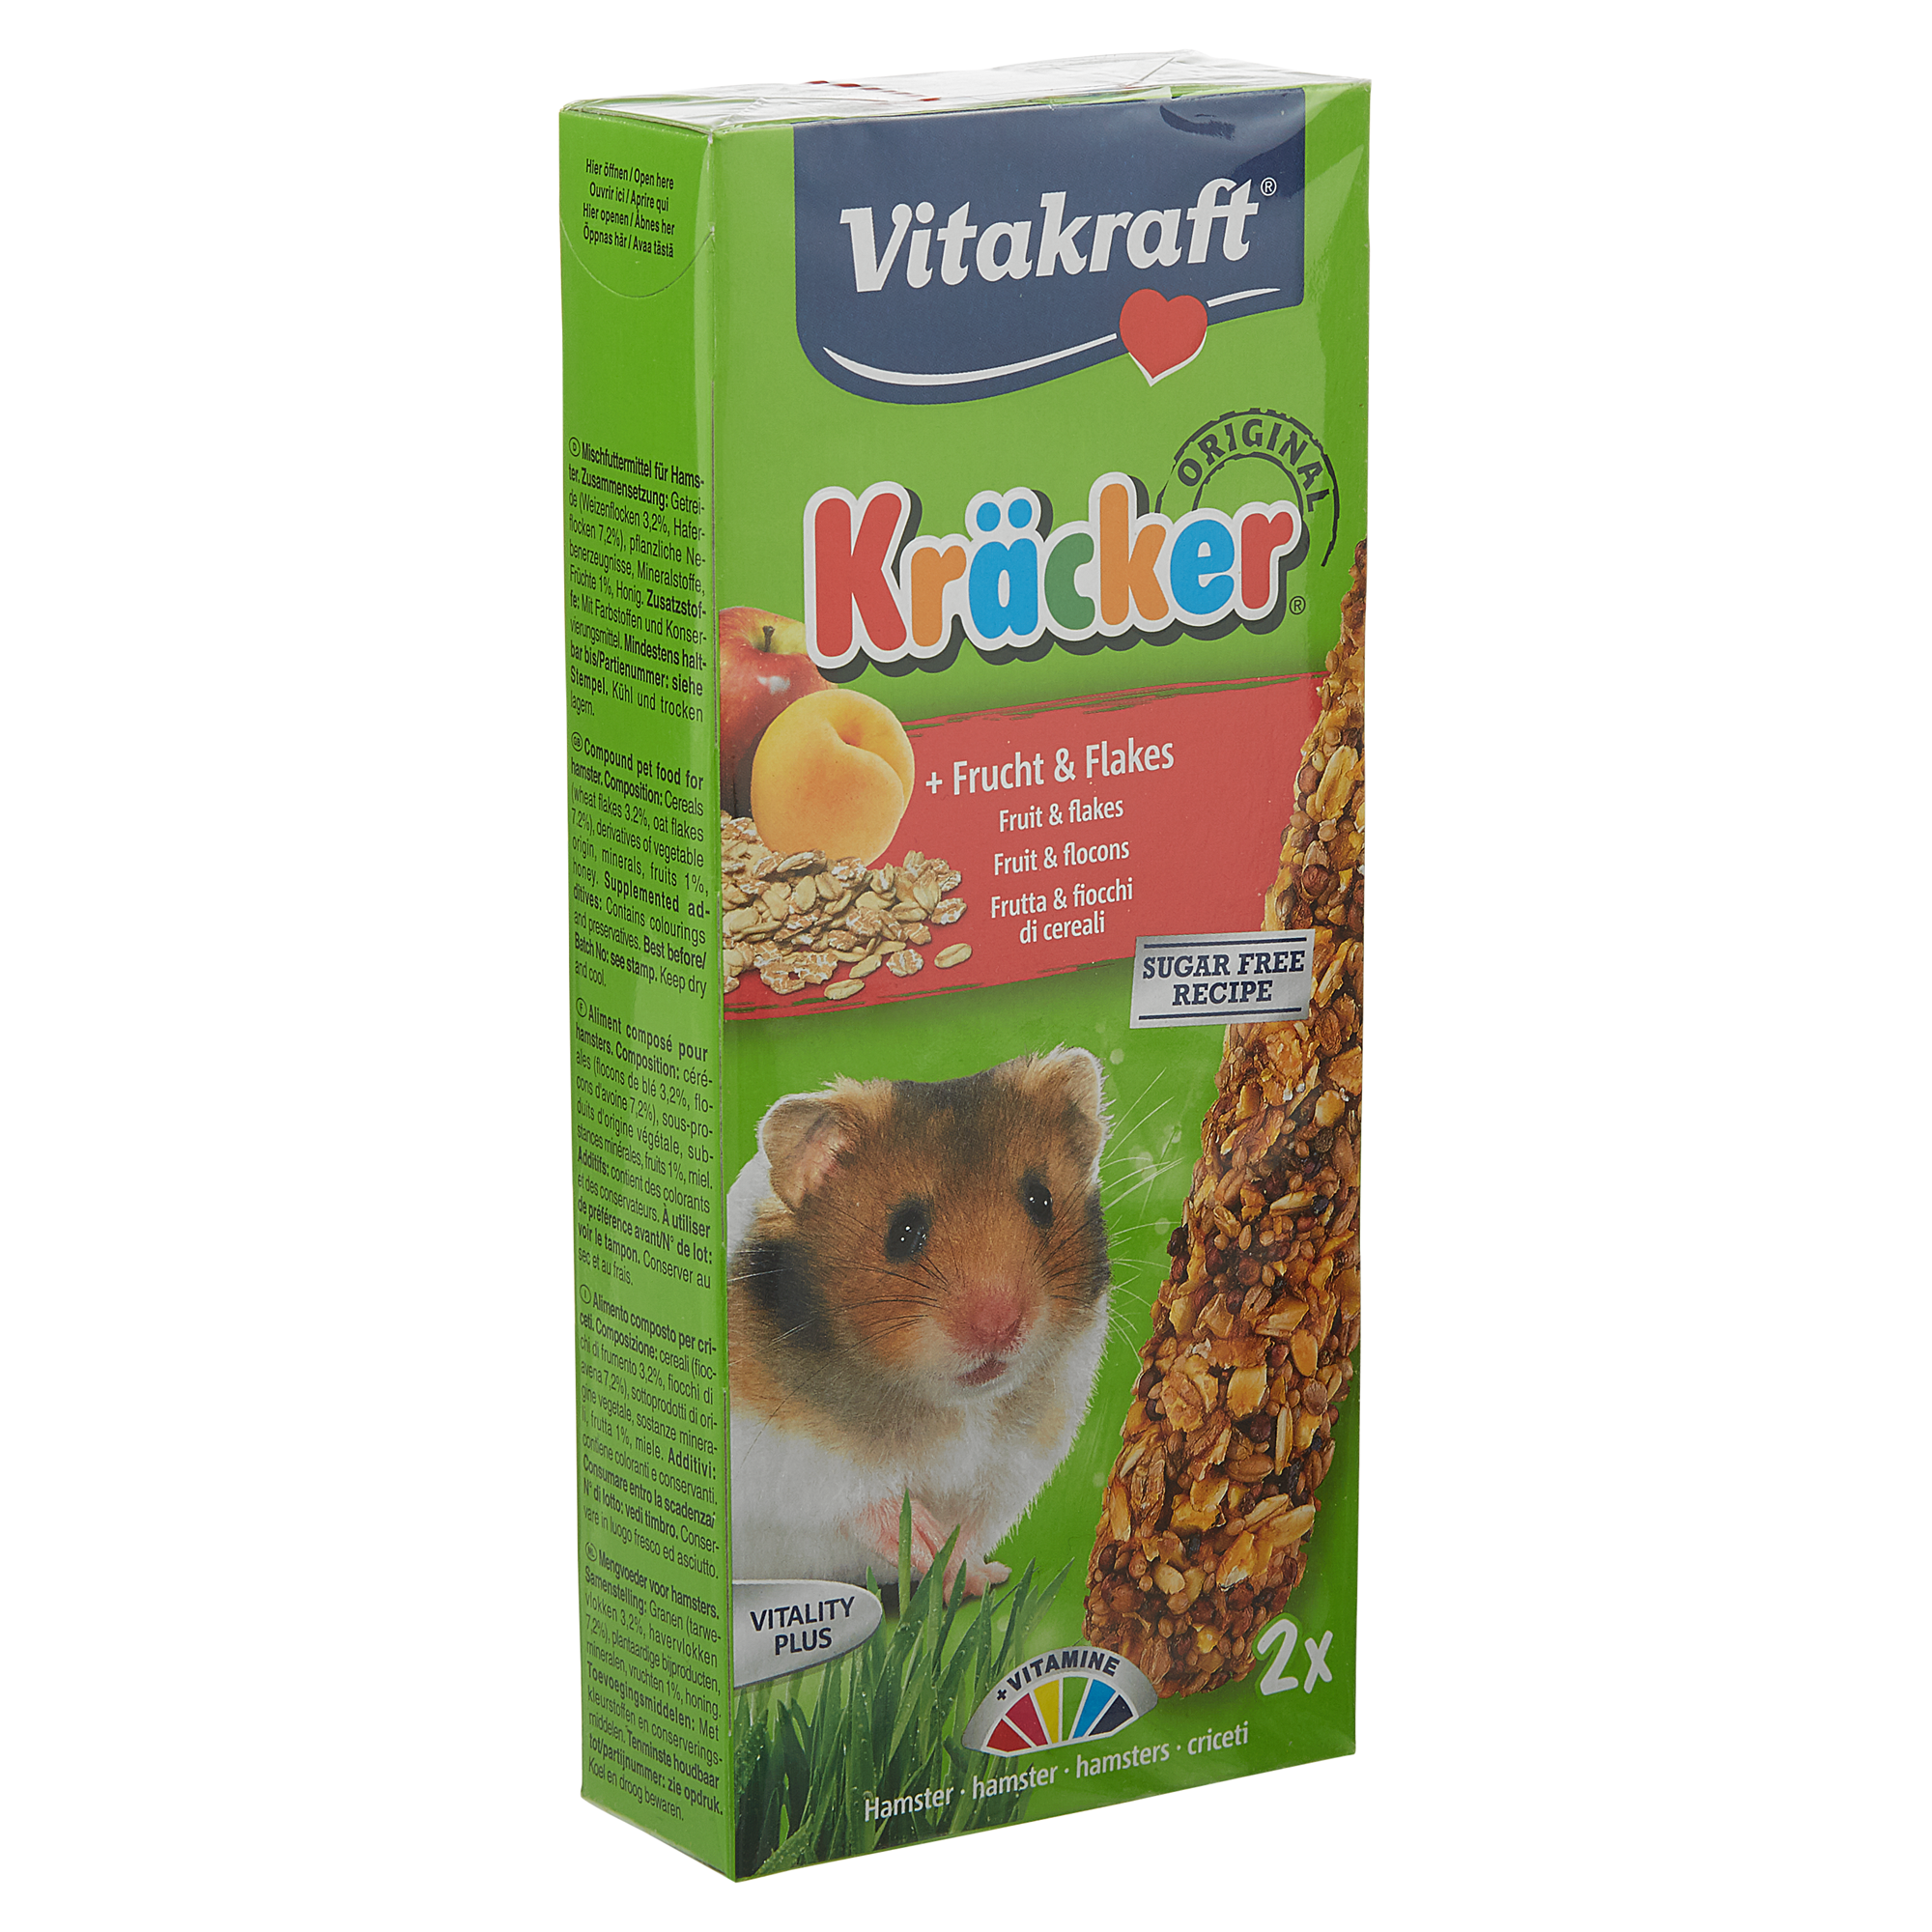 Hamsterfutter Kräcker® Original Frucht/Flakes 2 Stück + product picture